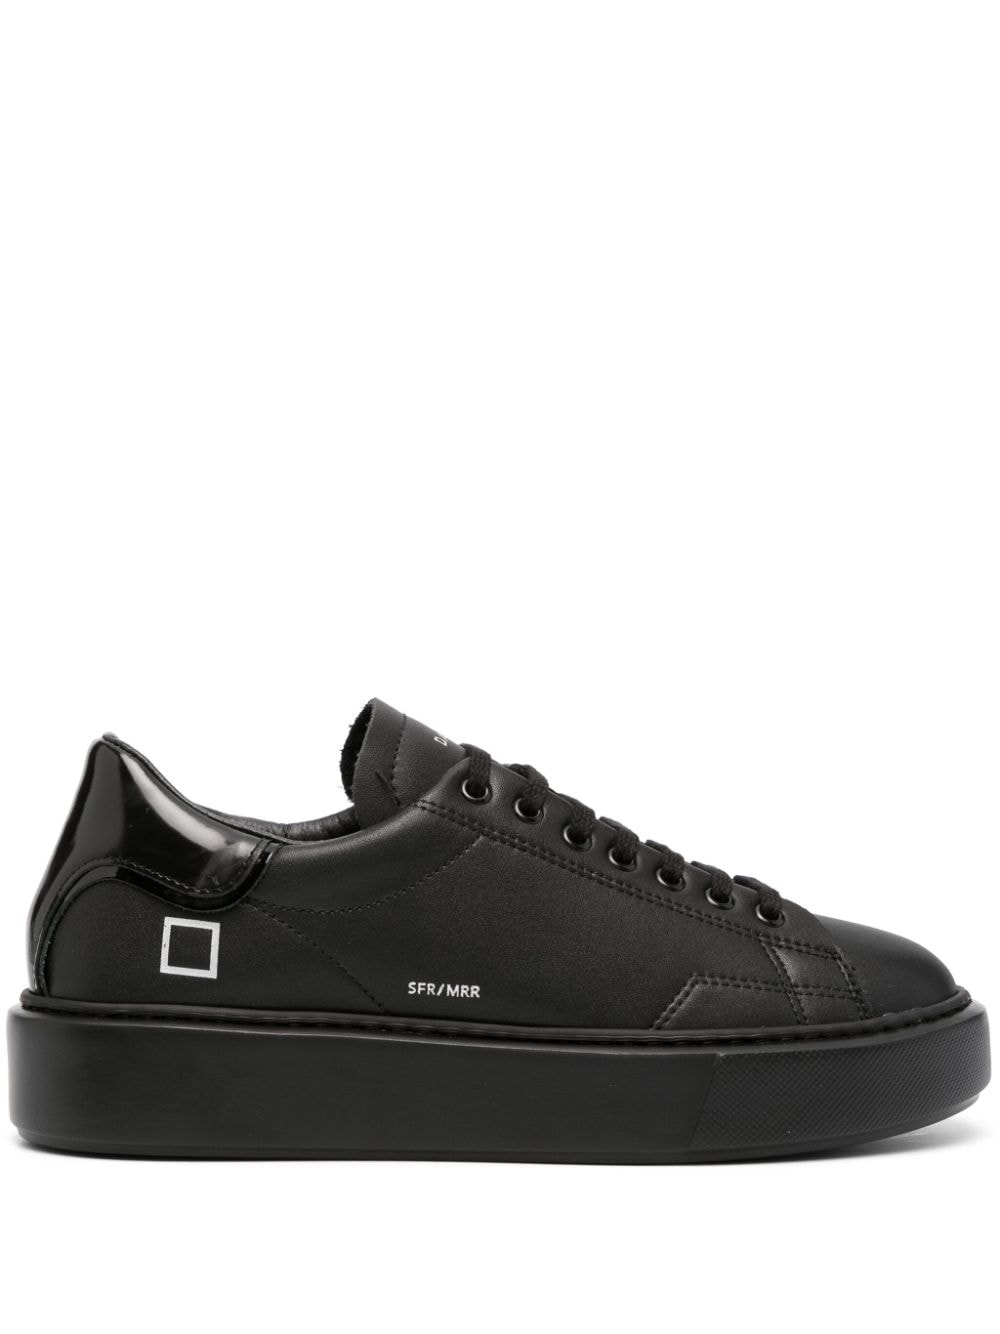 D.a.t.e. Sfera Mirror Sneakers In Black Leather